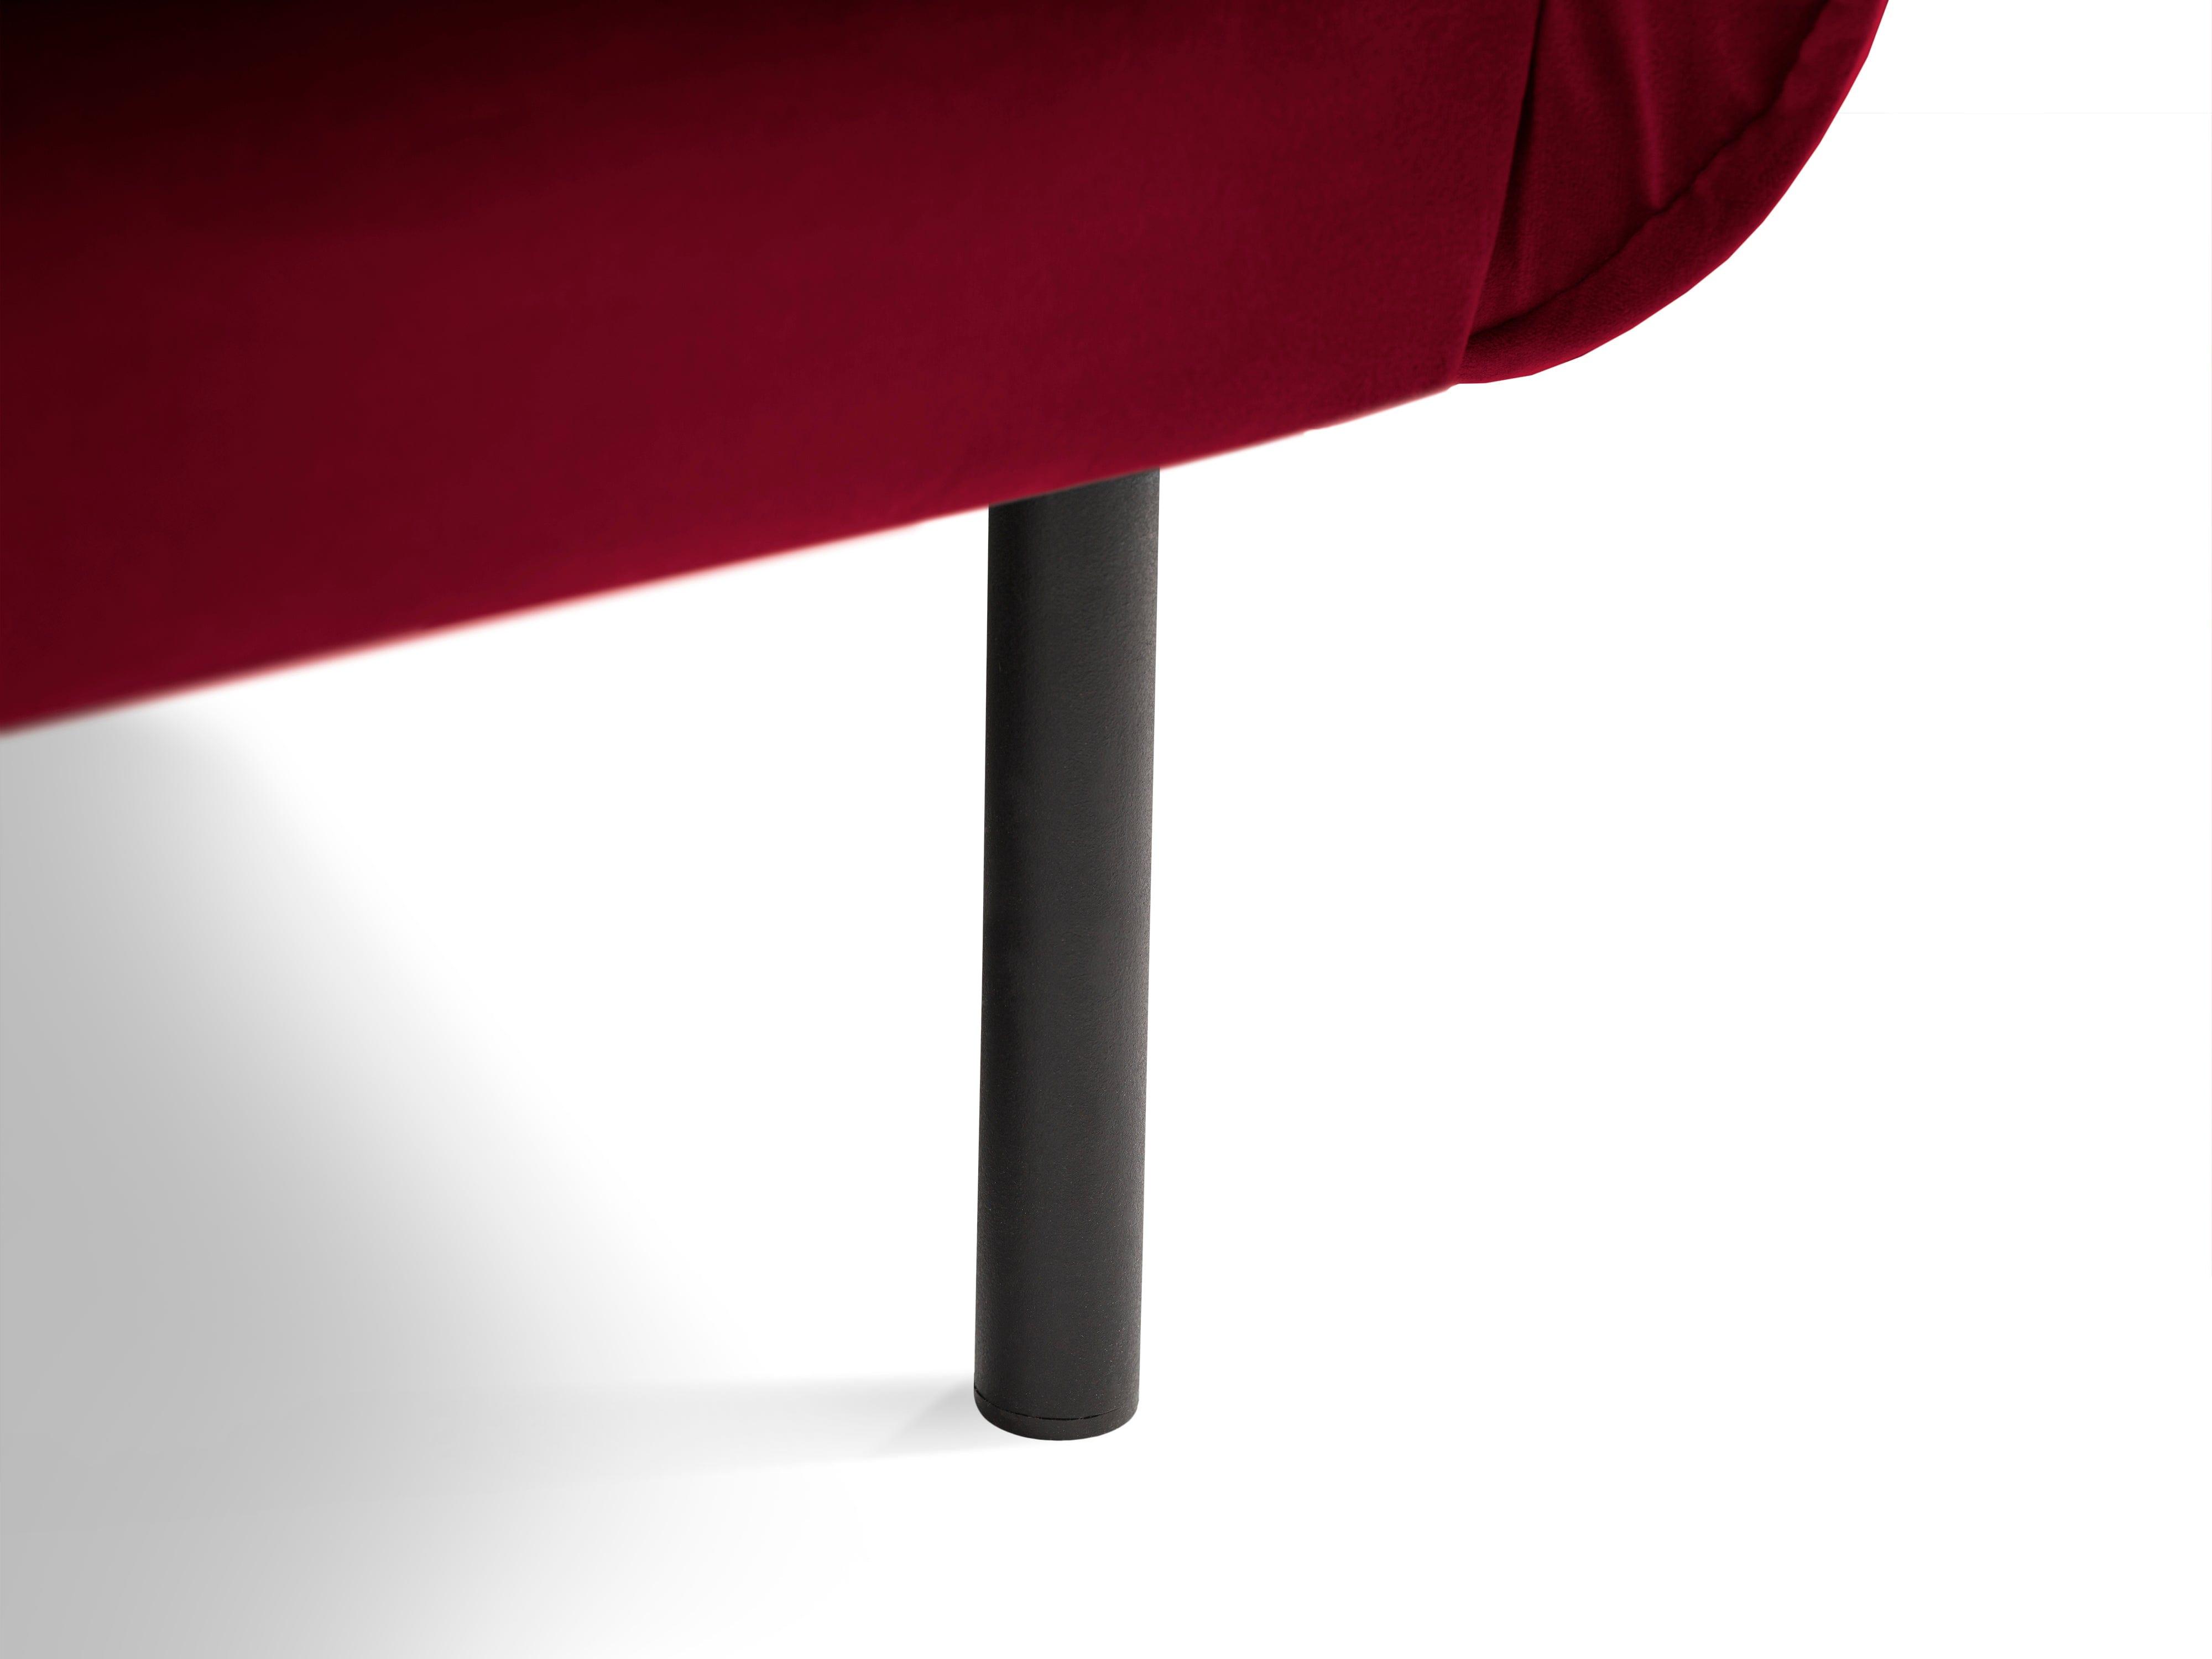 Sofa aksamitna 2-osobowa VIENNA bordowy z czarną podstawą Cosmopolitan Design    Eye on Design